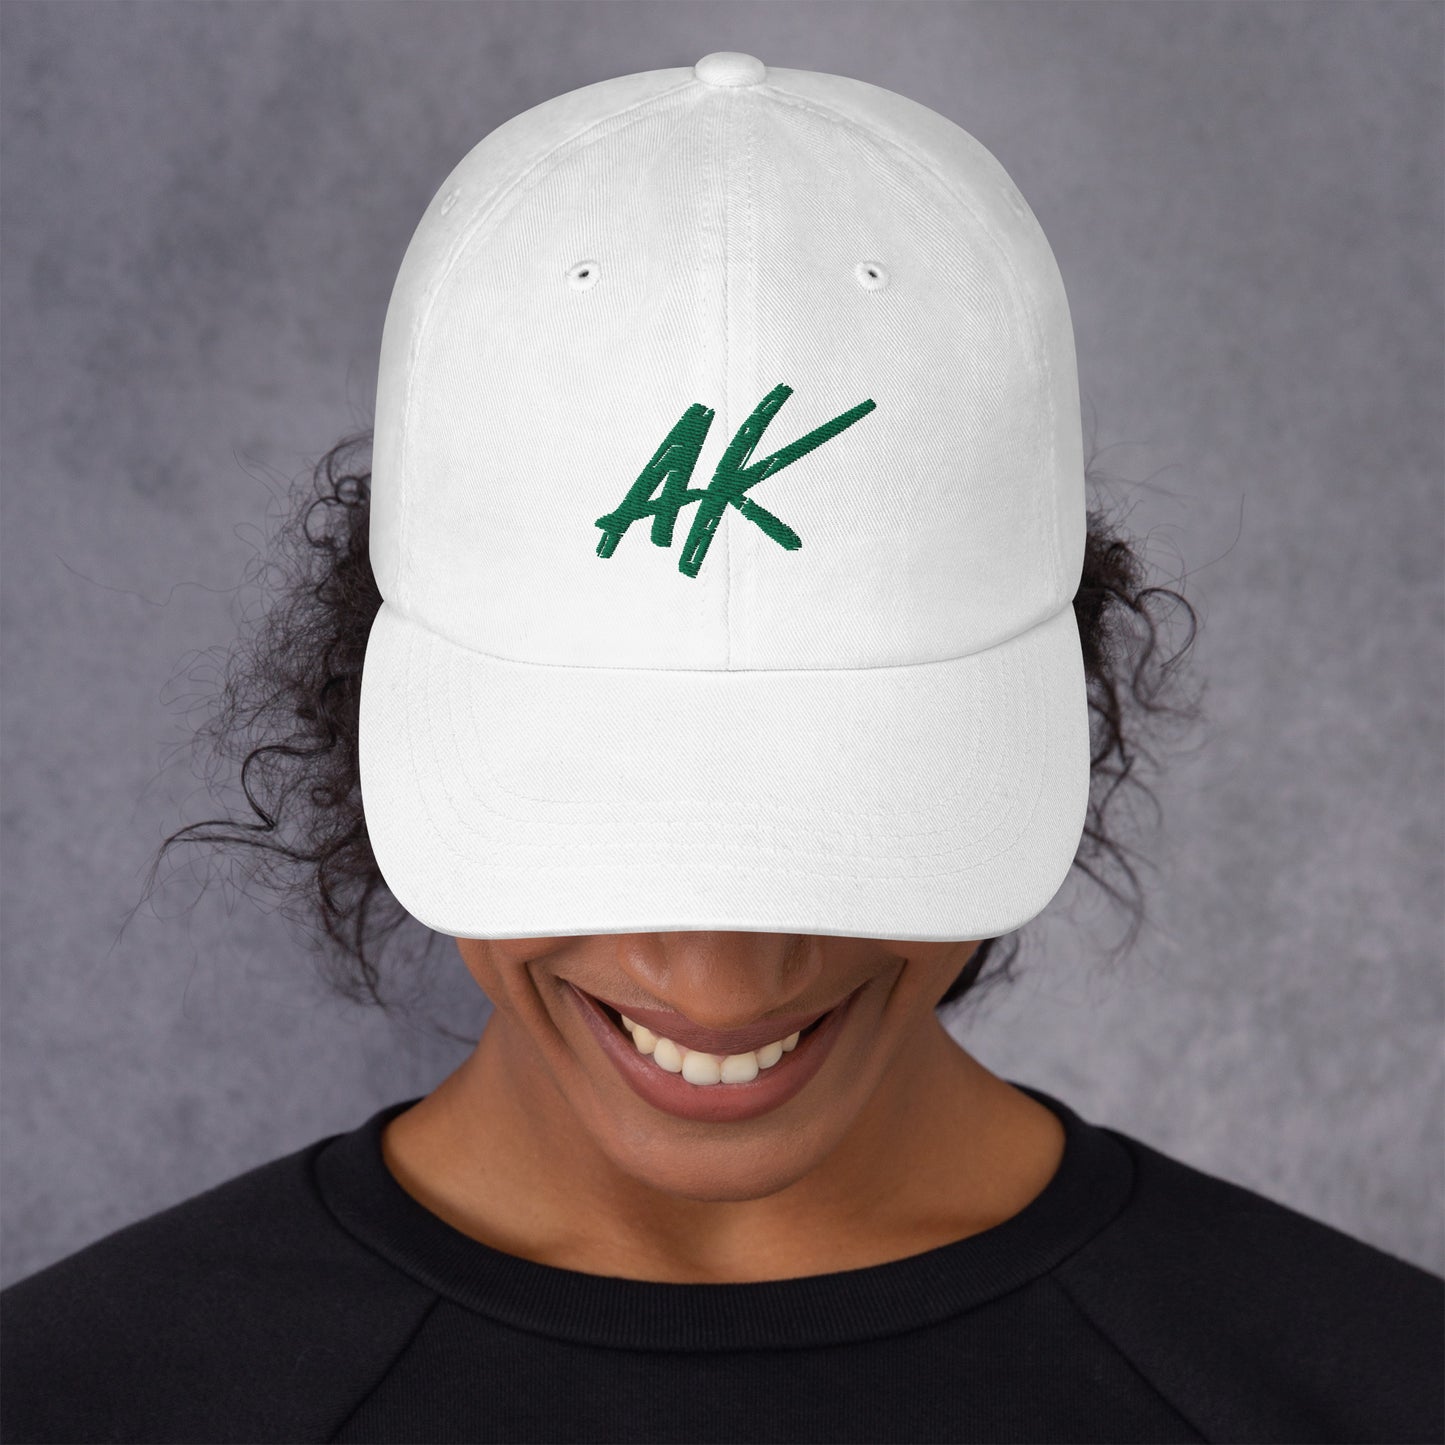 AK Dad hat (green)